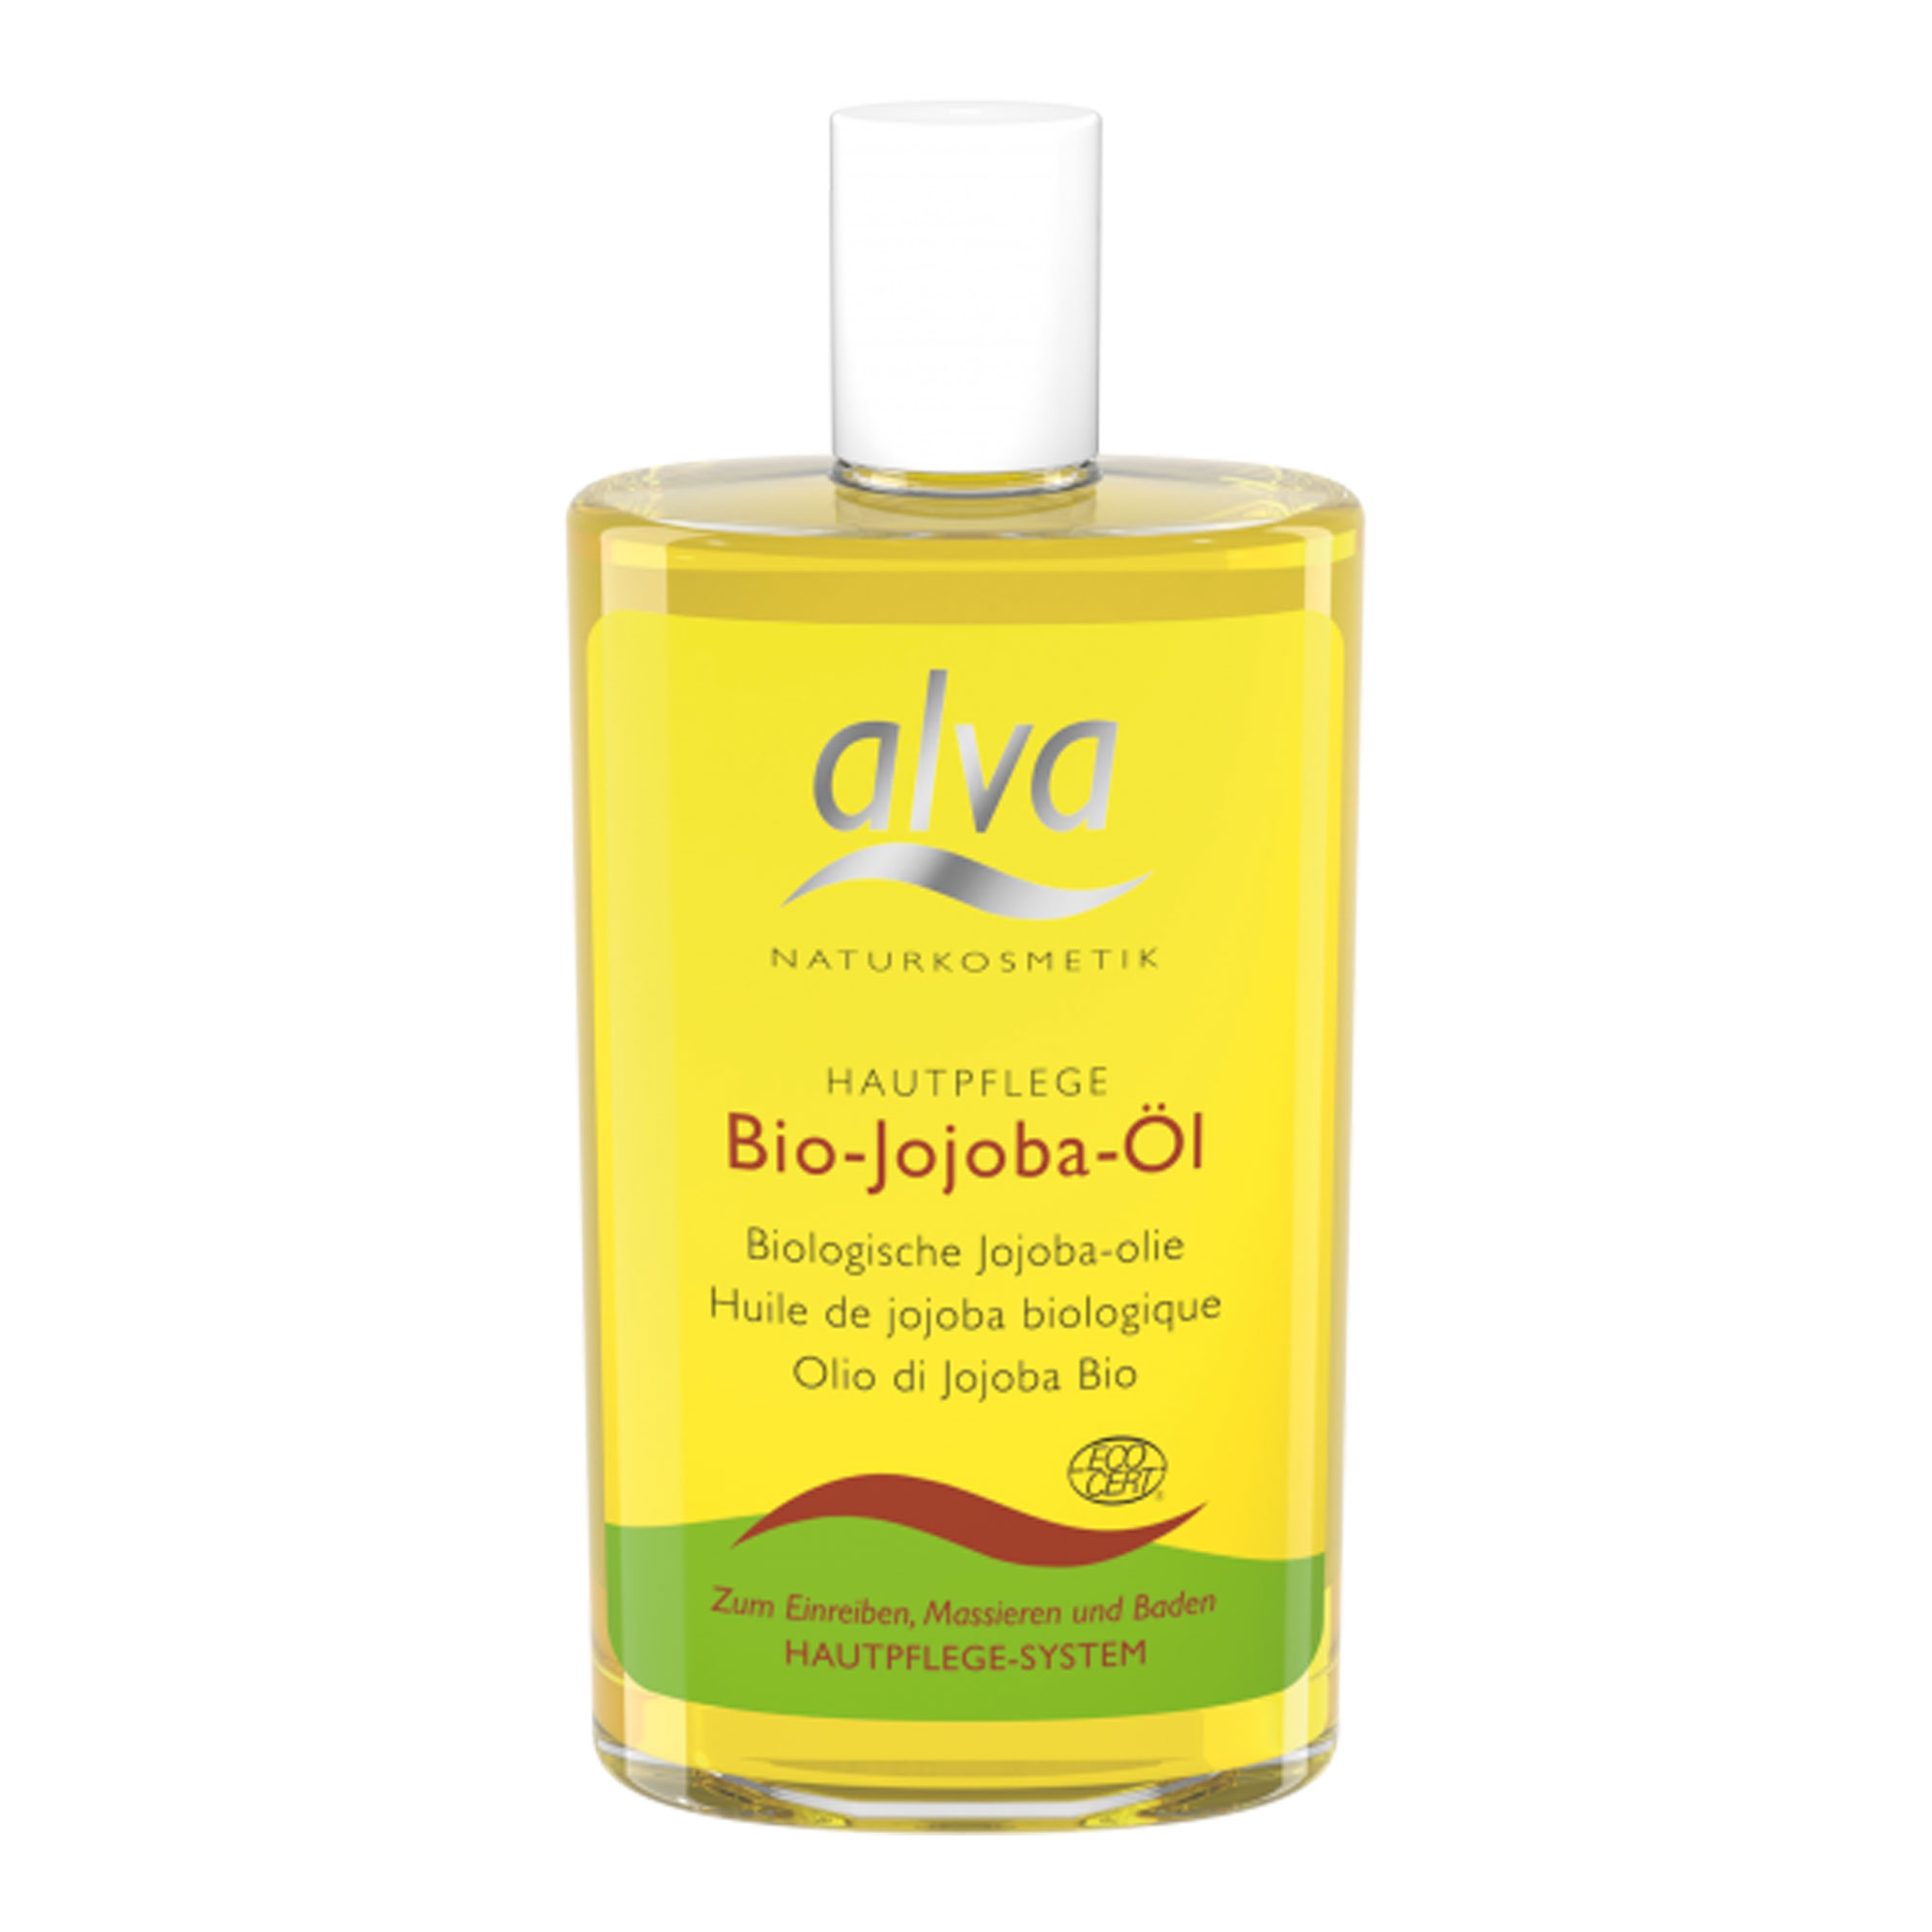 100% naturreines Bio-Jojoba-Öl. Zur Hautpflege.